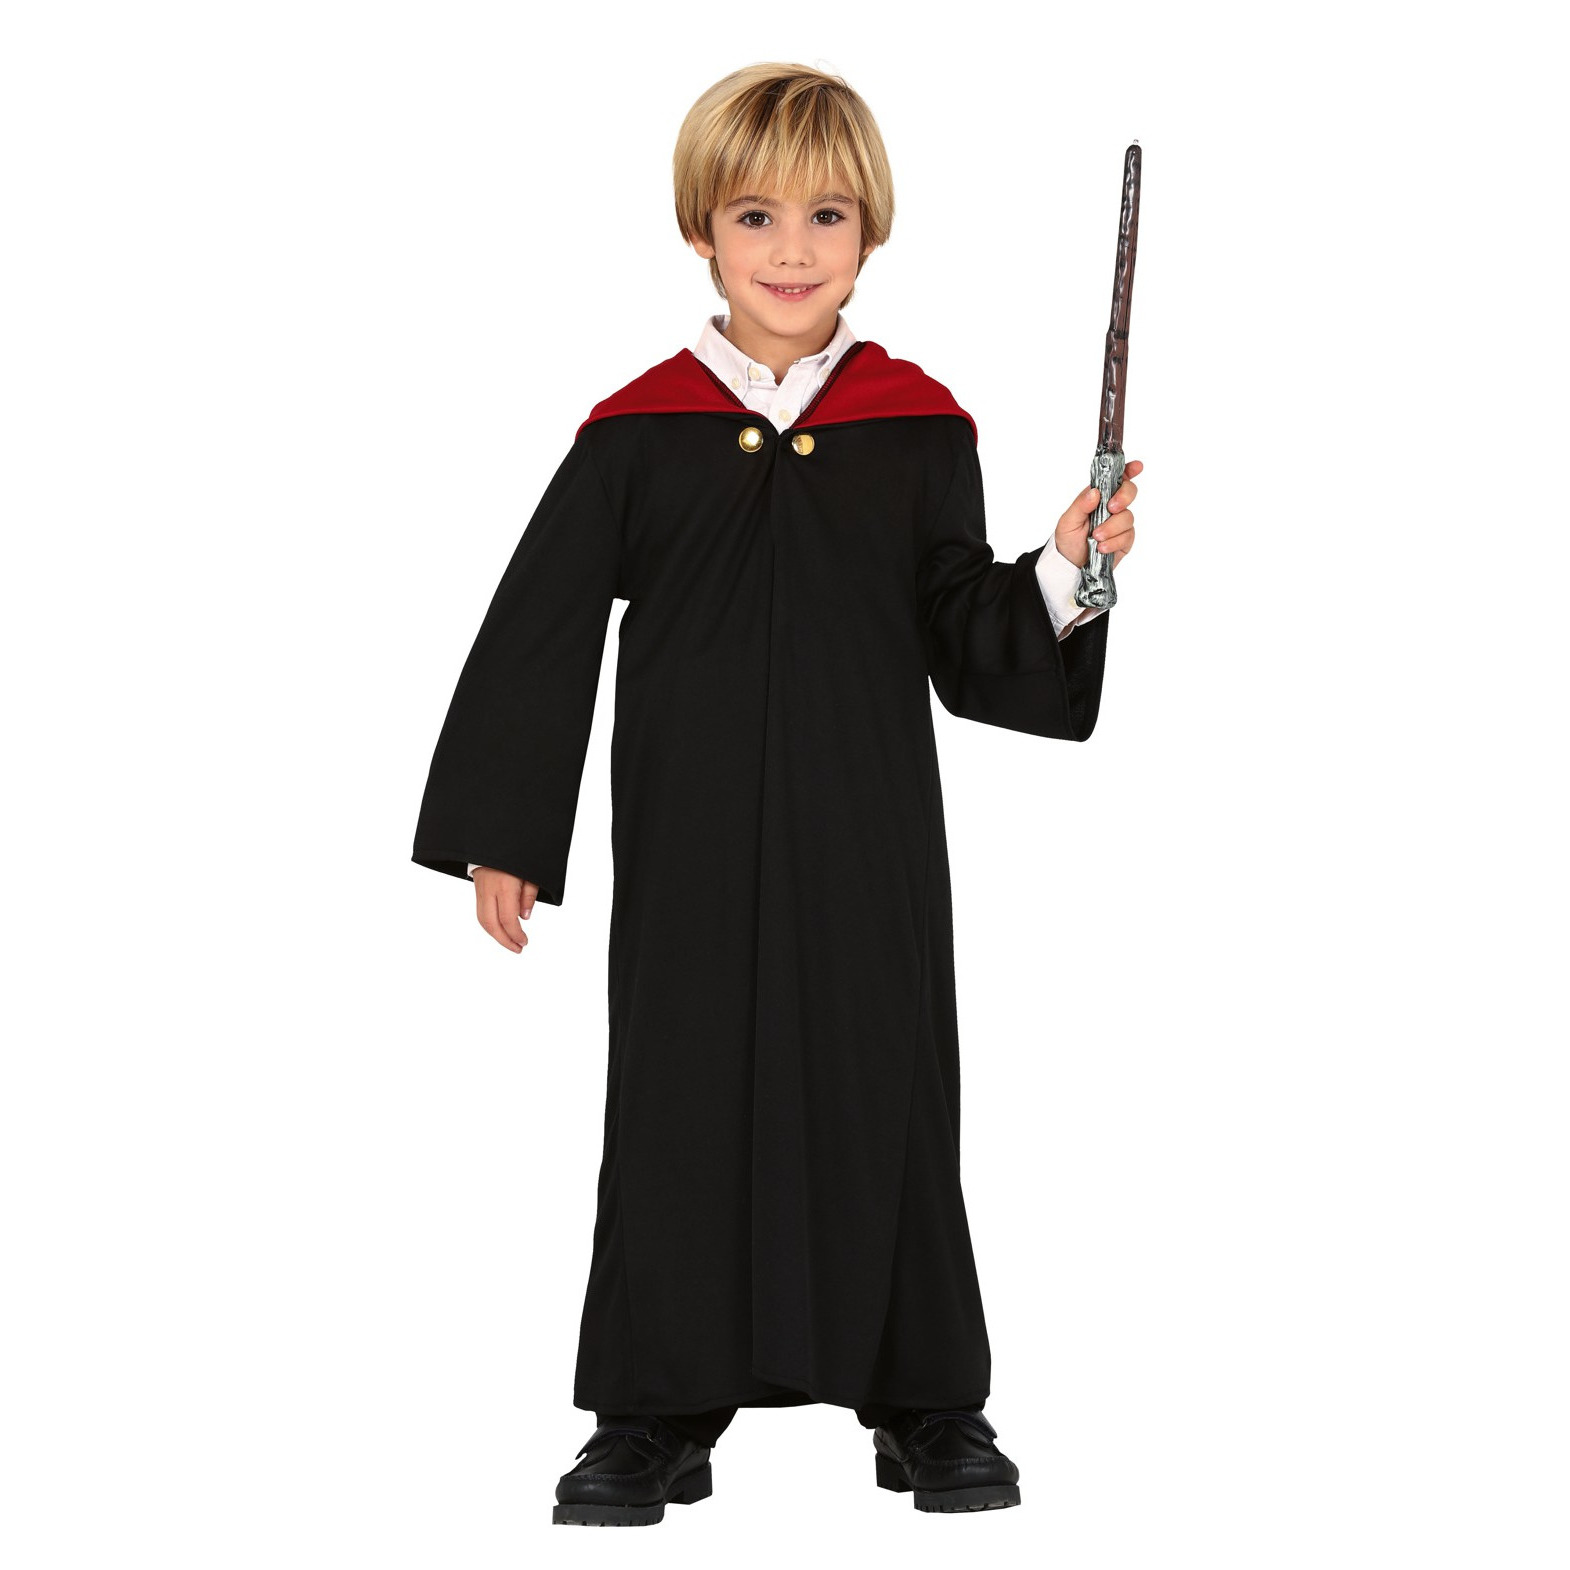 Tovenaar student horror kostuum voor jongens